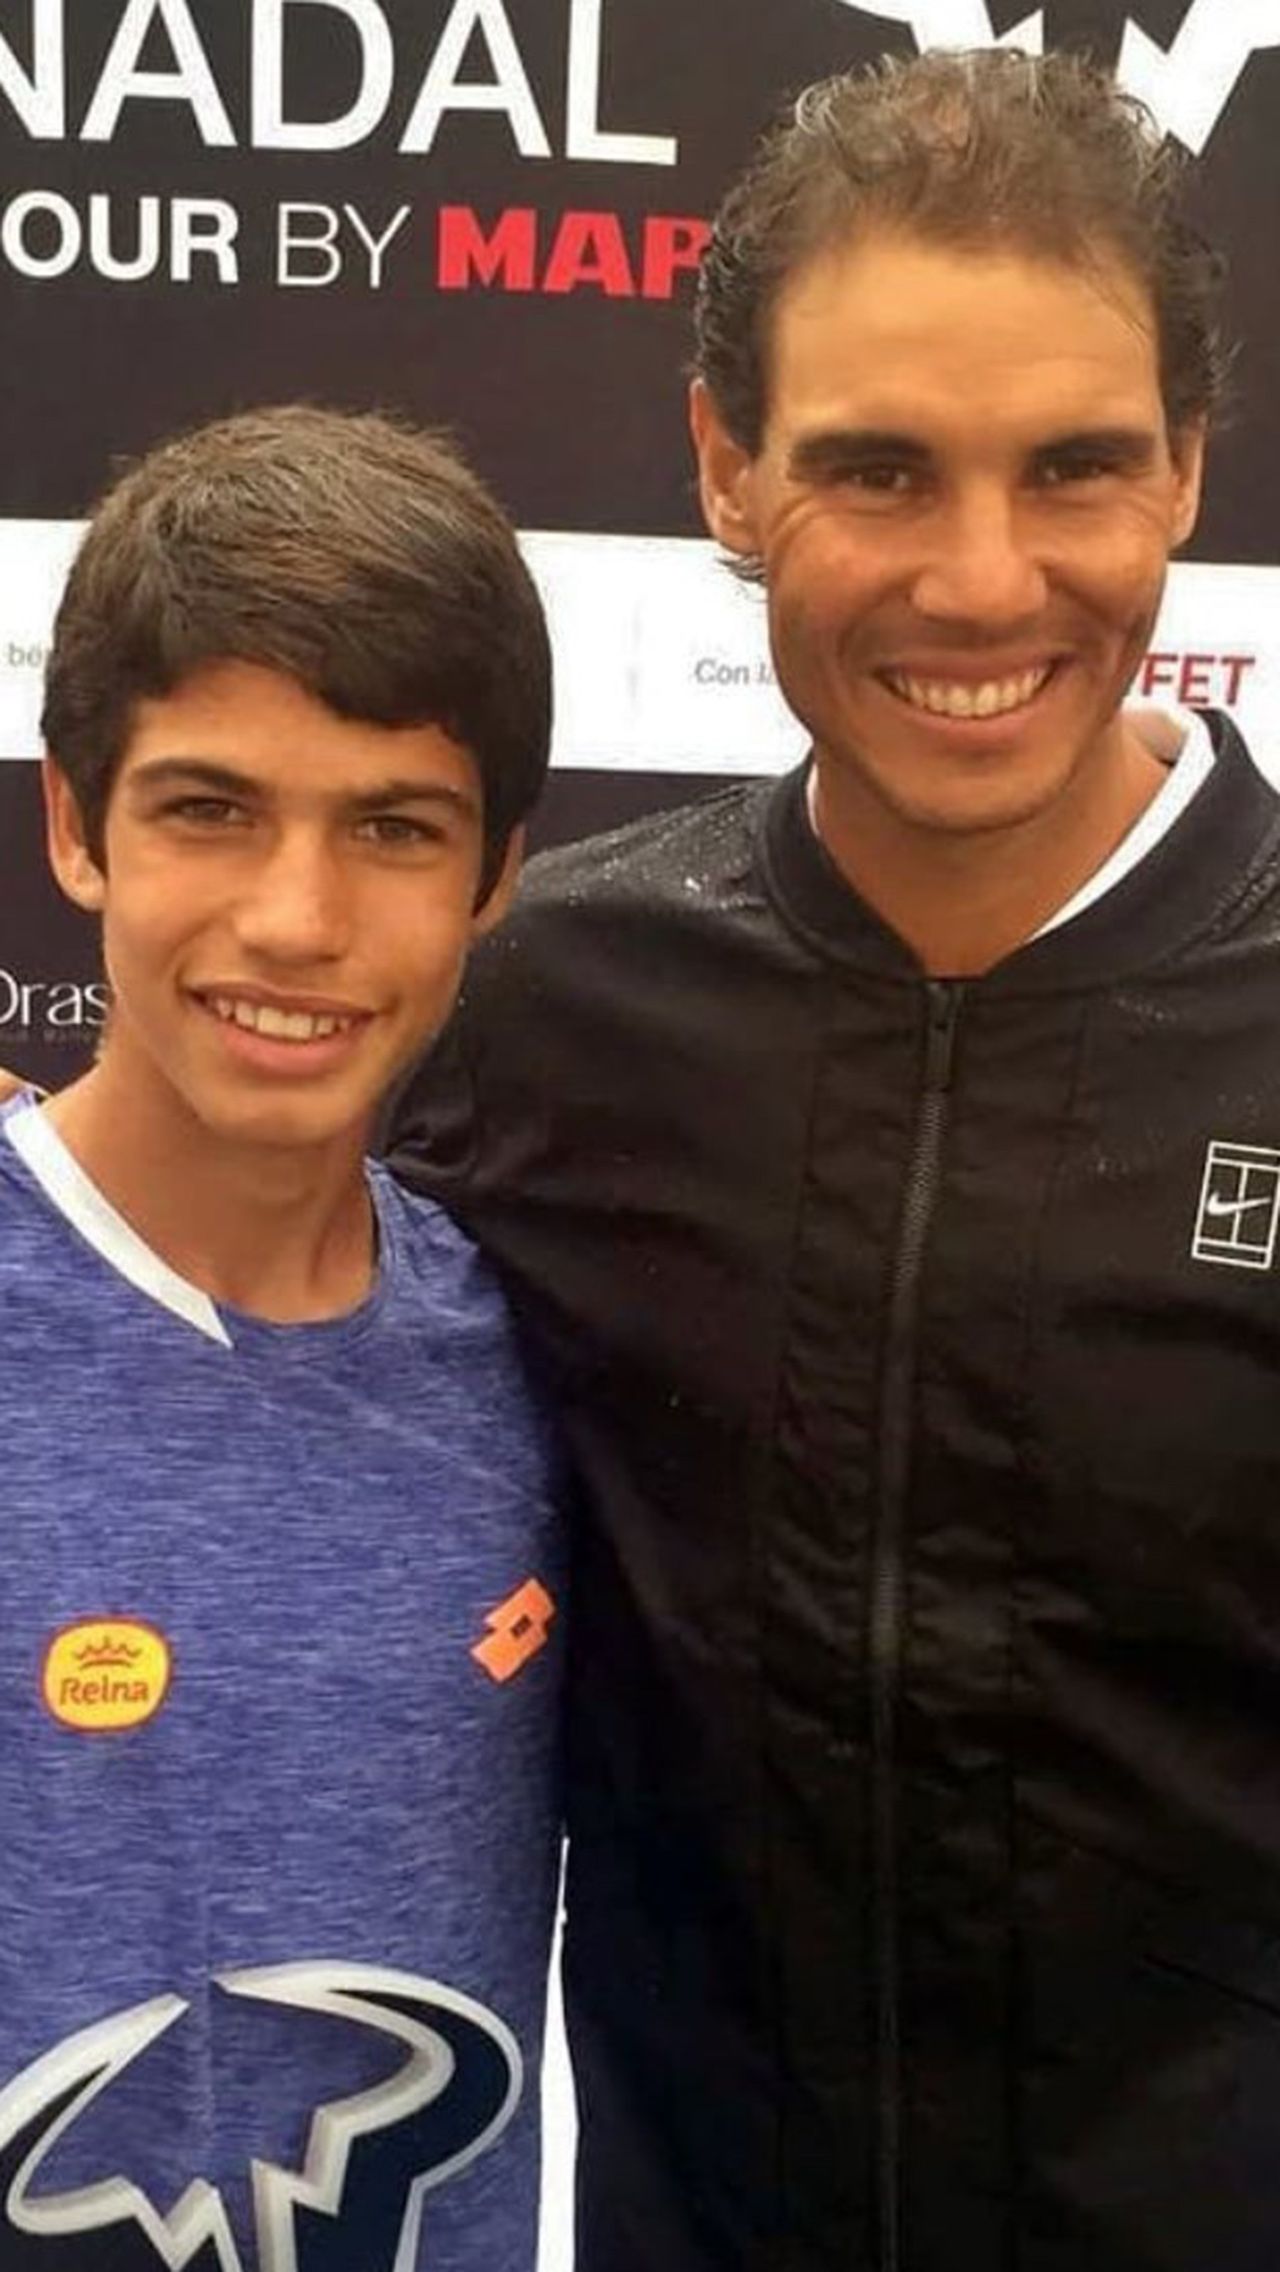 «Нелегко быть сравнимым с Рафаэлем Надалем, так как оба поколения в конечном итоге проигрывают. Он — мой кумир, он есть только такой один. Я продолжаю усердно работать, чтобы стать профессиональным теннисистом», — сказал 16-летний Карлос в интервью TennisWorld.